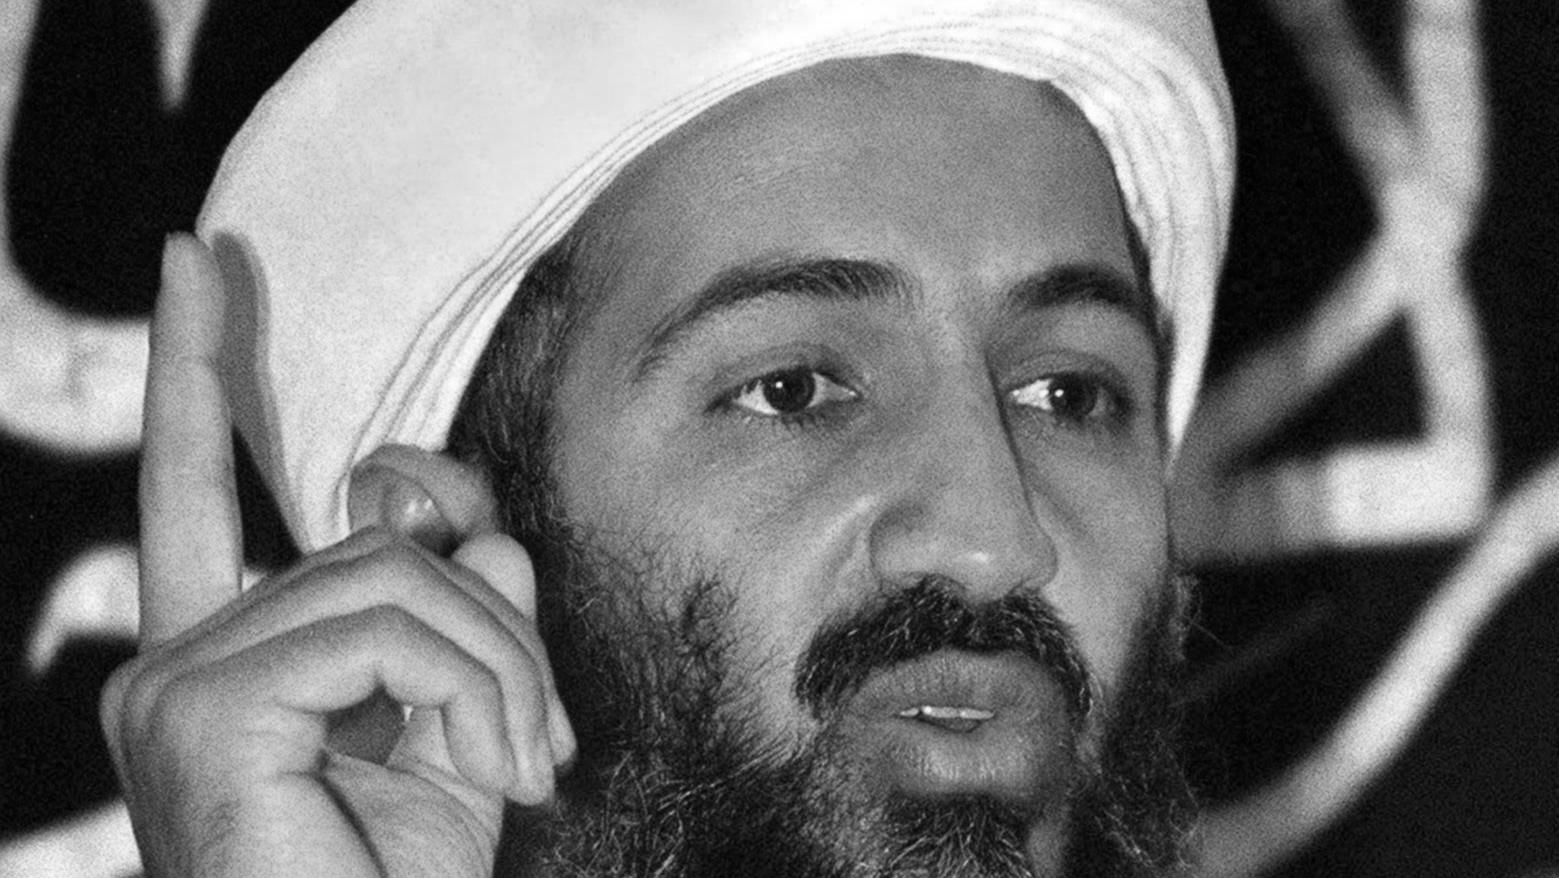 Terrorist Bin Laden gilt als Drahzieher der schlimmen Anschläge am 11. September 2001 auf das World Trade Center und kam bei einem Militäreinsatz der US-Streitkräfte  2011 in Pakistan ums Leben.